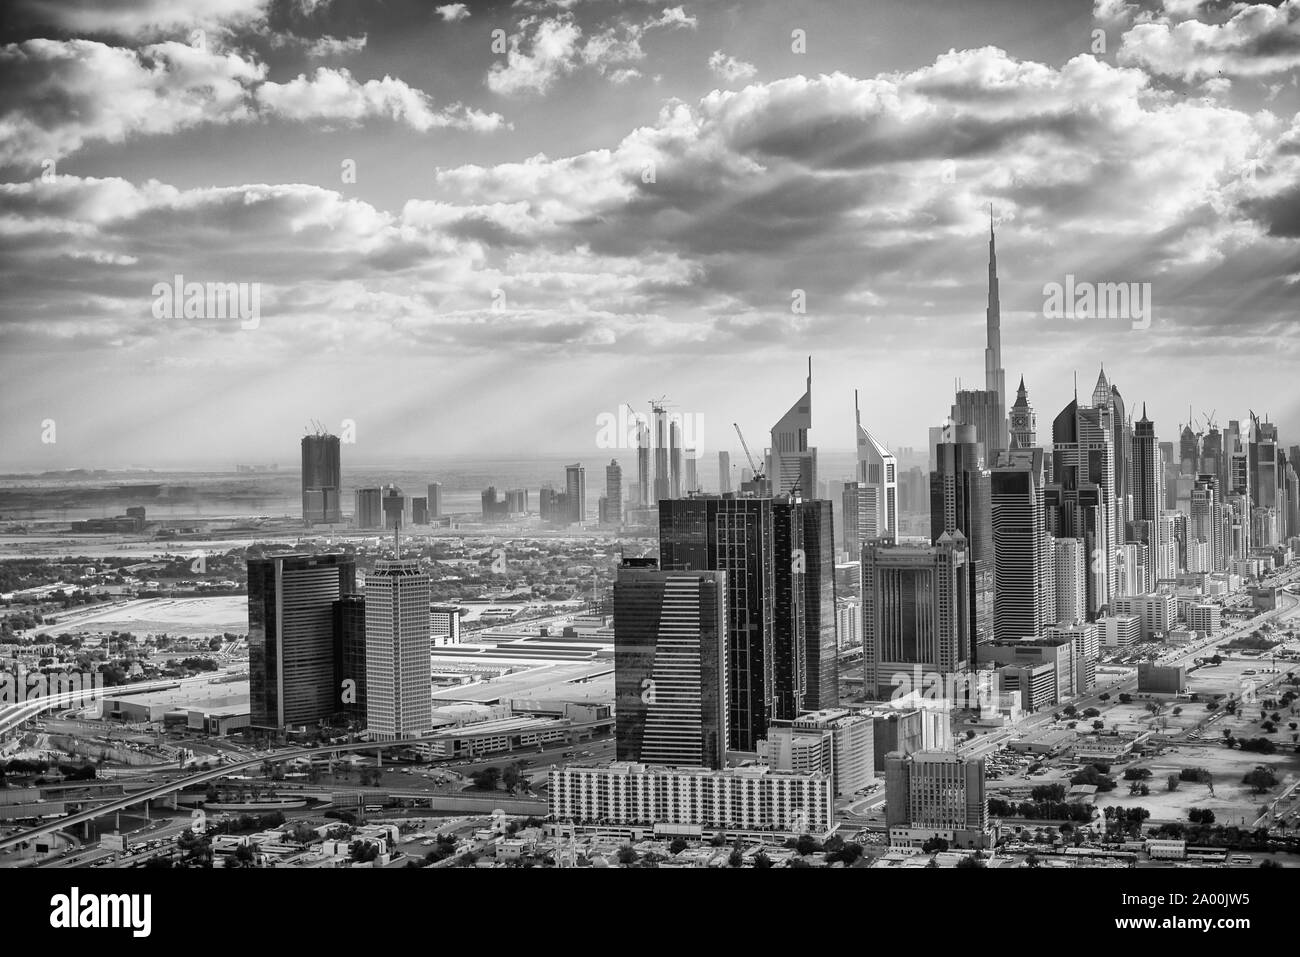 Downtown Dubai ab dem Himmel bei Sonnenuntergang gesehen, die moderne Skyline der Stadt. Stockfoto